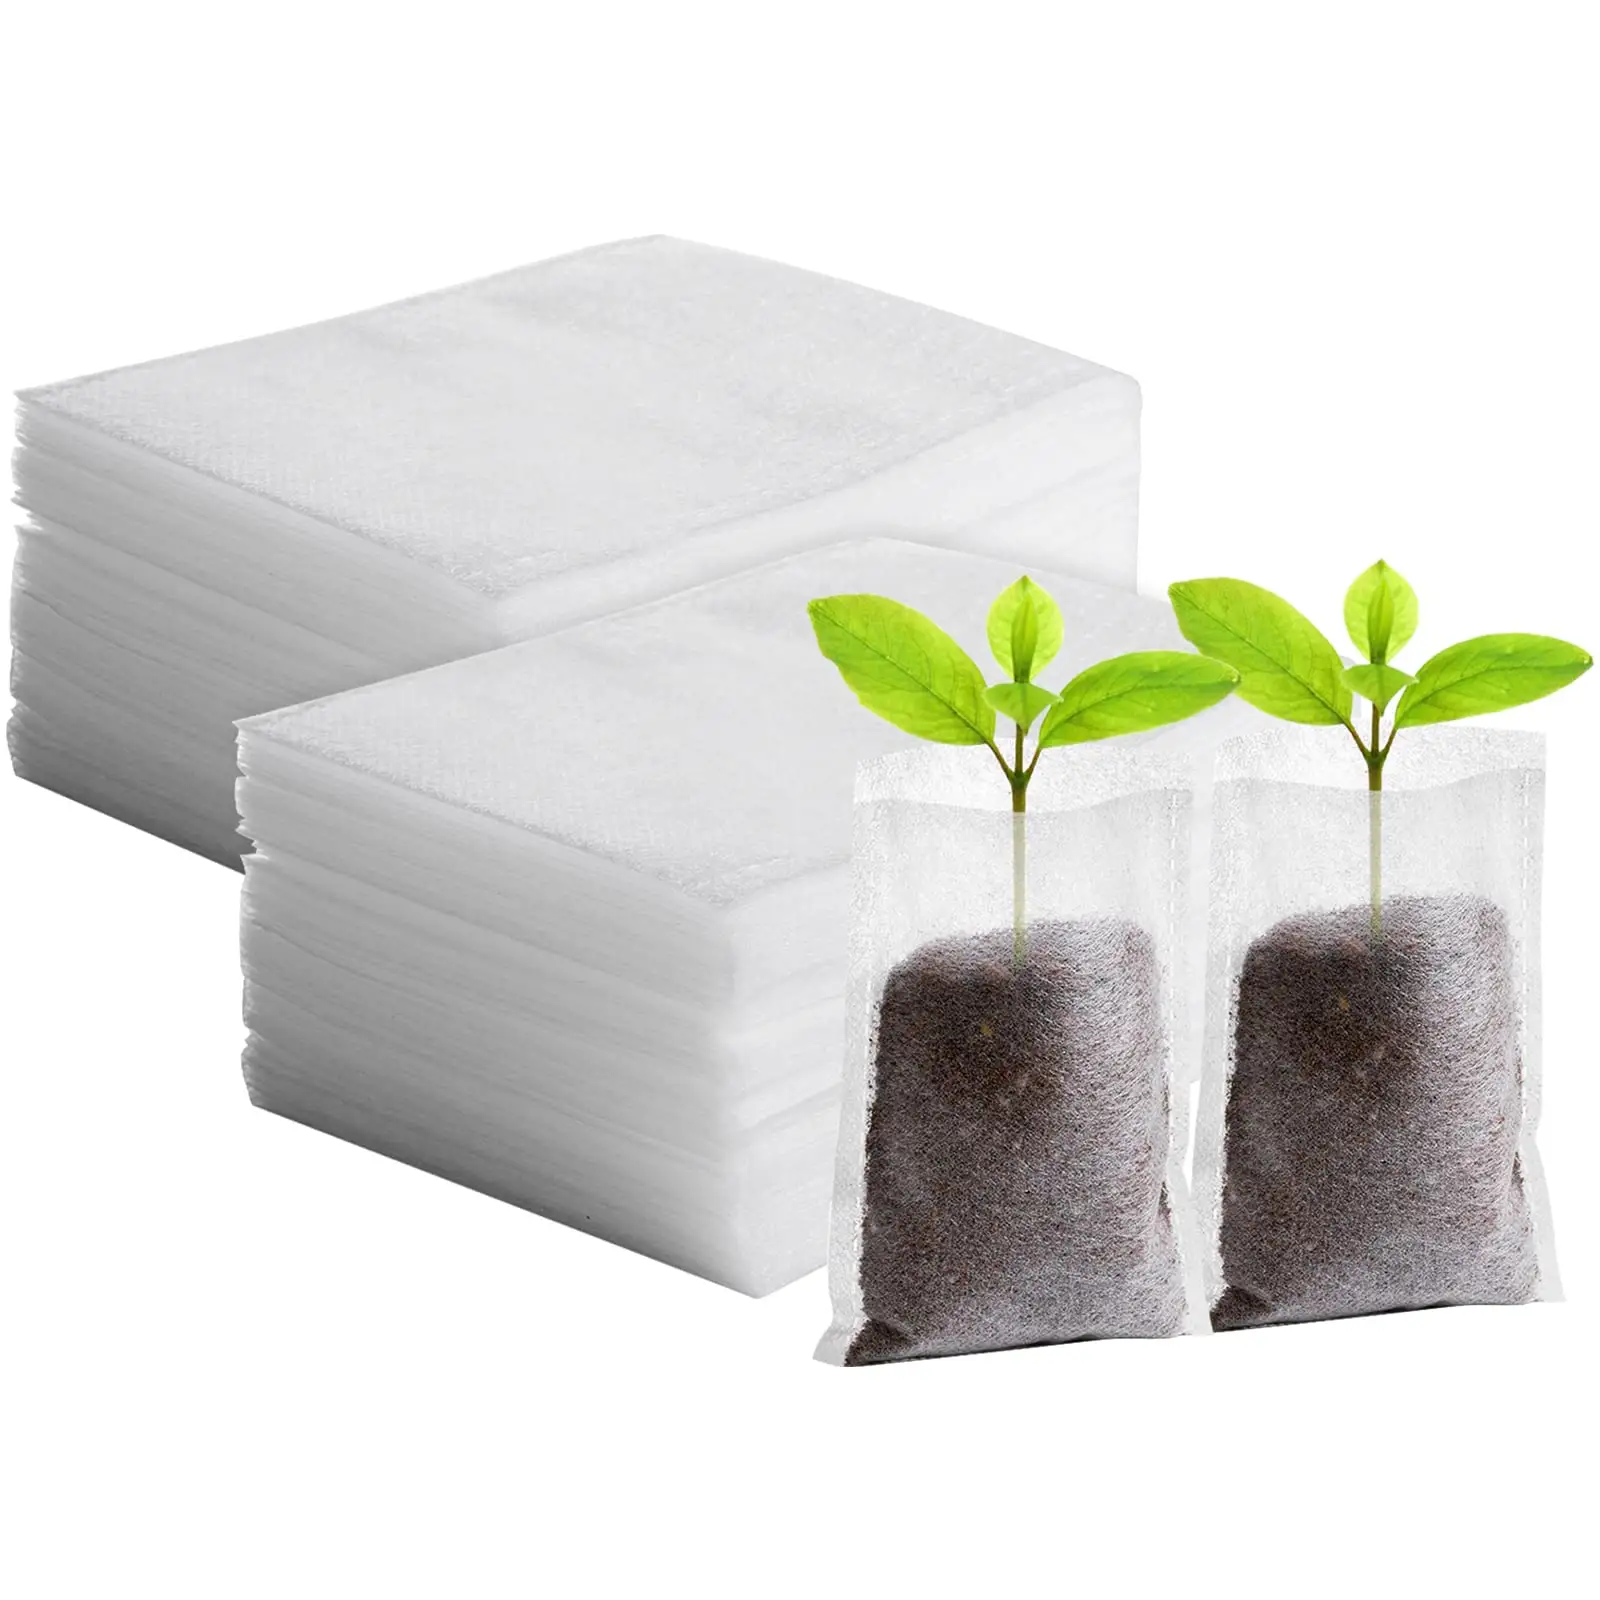 Çevre dostu ucuz bitkiler tohum sebze hava geçirgenliği korumak nem olmayan dokuma kumaş biyobozunur kreş çanta büyümek